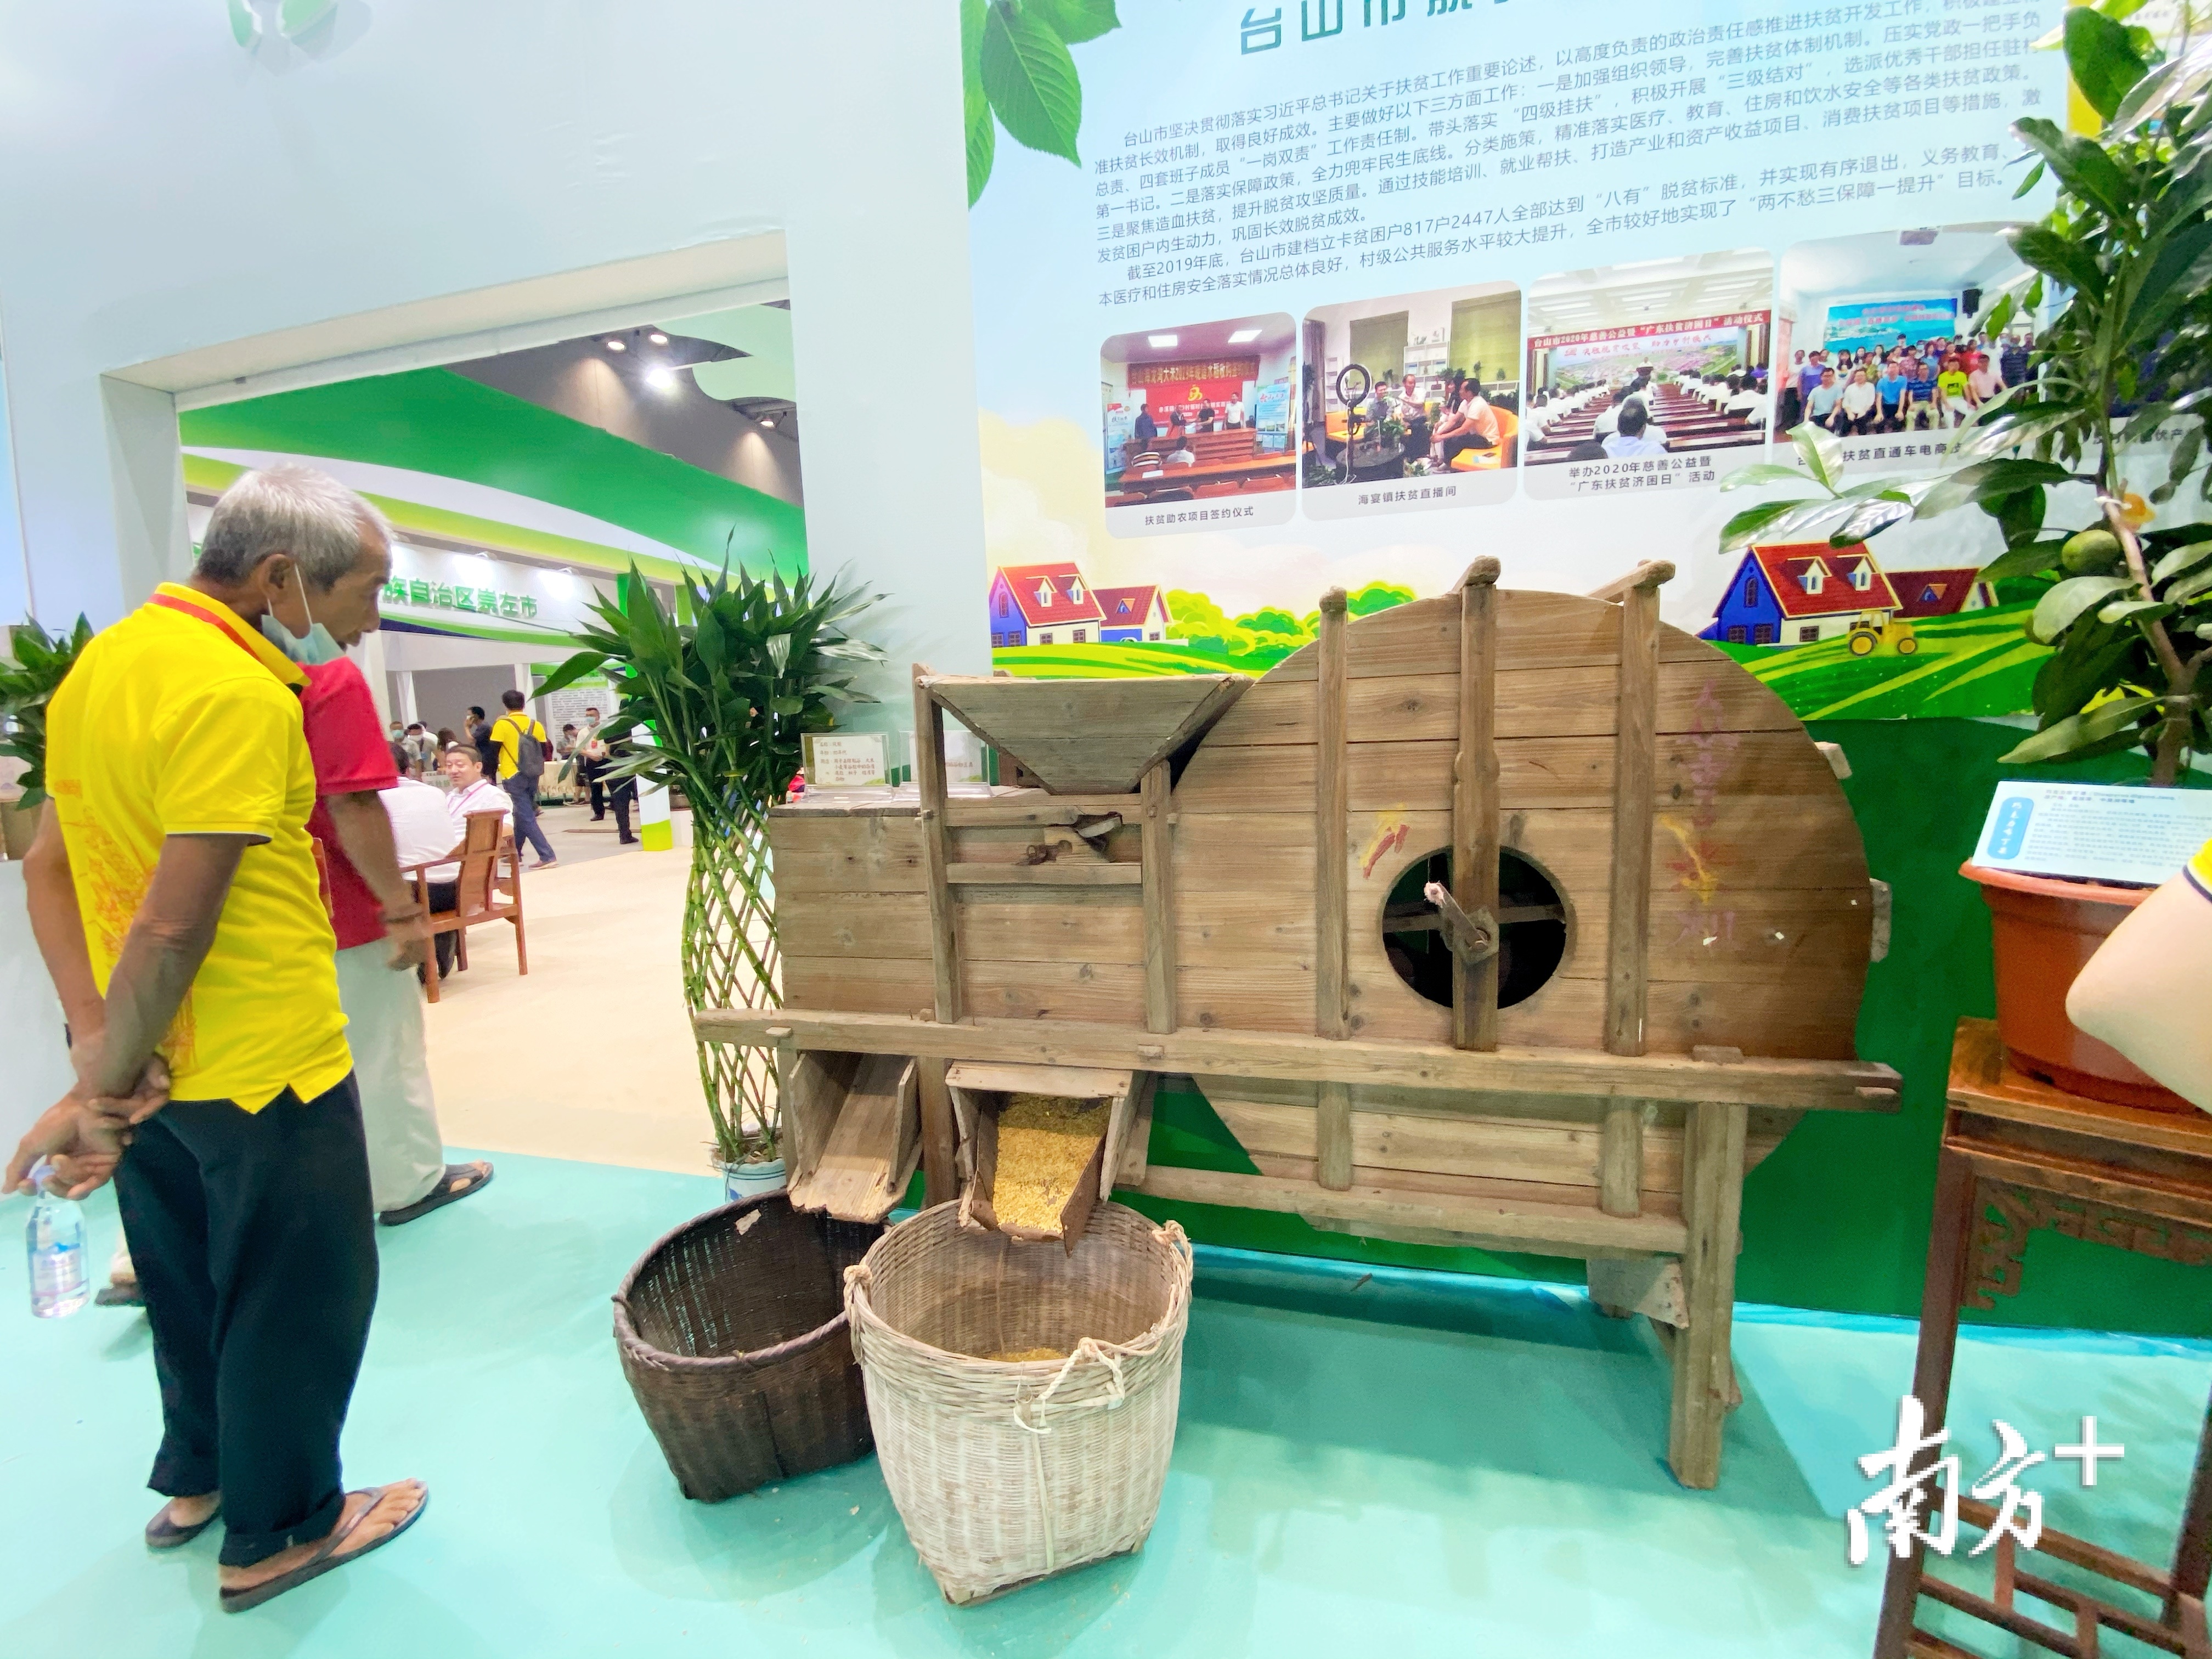 台山展馆内同样摆出了传统农用工具。